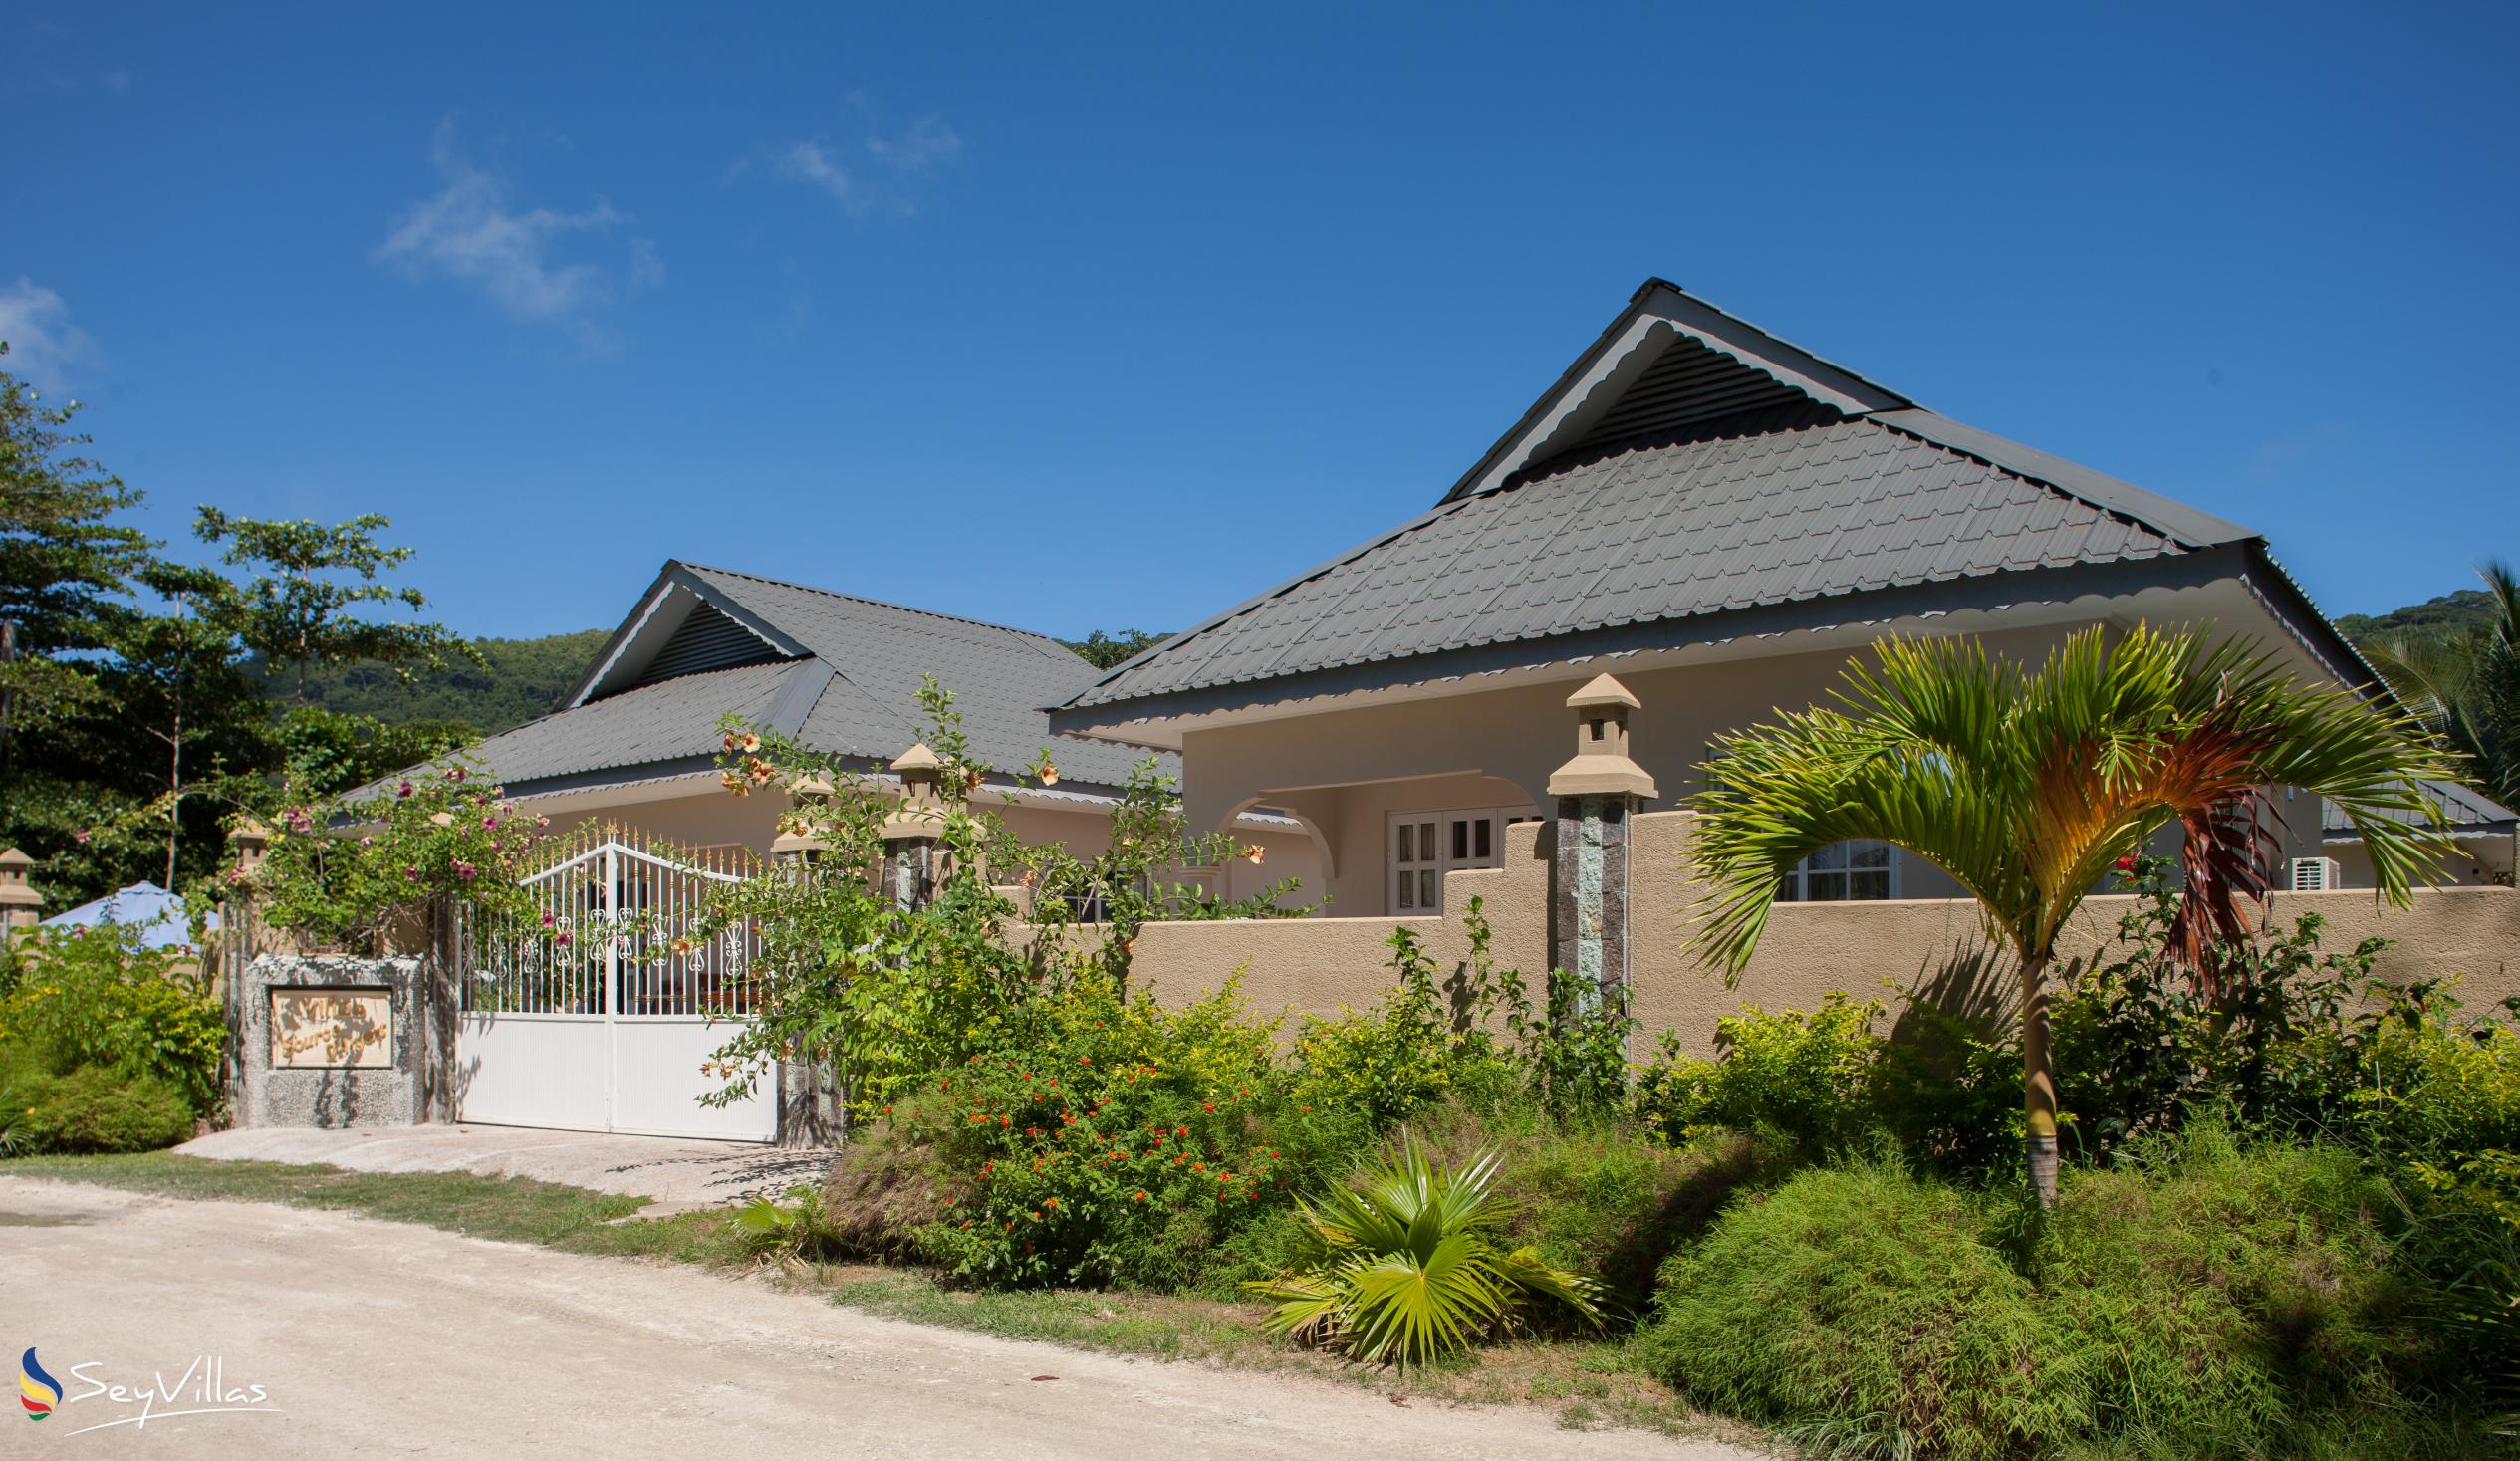 Foto 41: Villa Source D'Argent - Aussenbereich - La Digue (Seychellen)